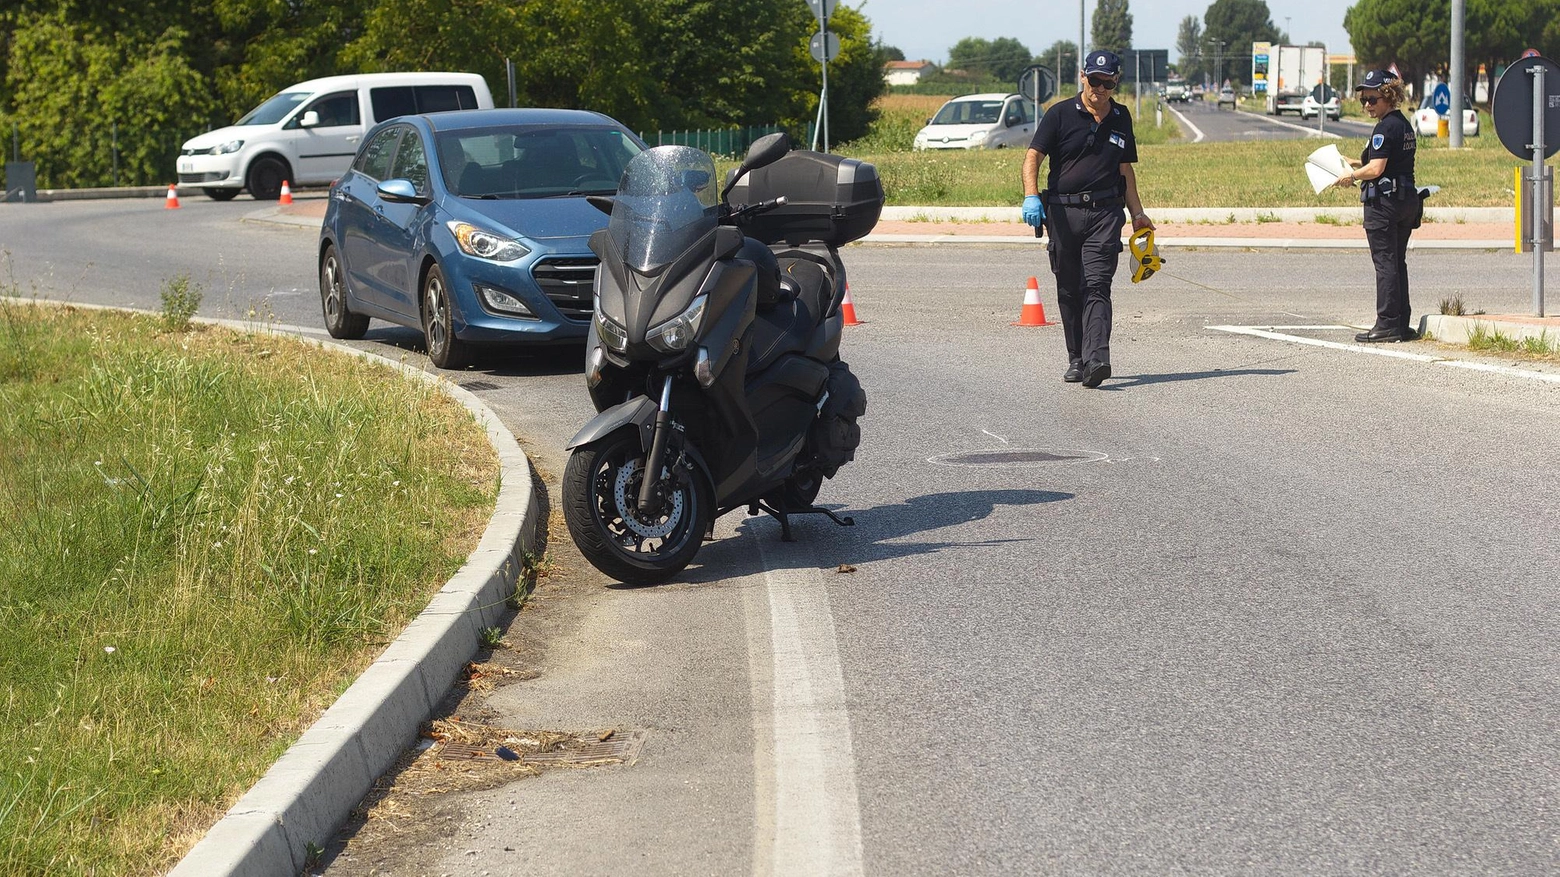 In mattinata schianto a Casal Corsetti sulla Romea, grave automobilista. Sulla Baiona ciclomotore colpito da una Peugeot bianca che fugge.